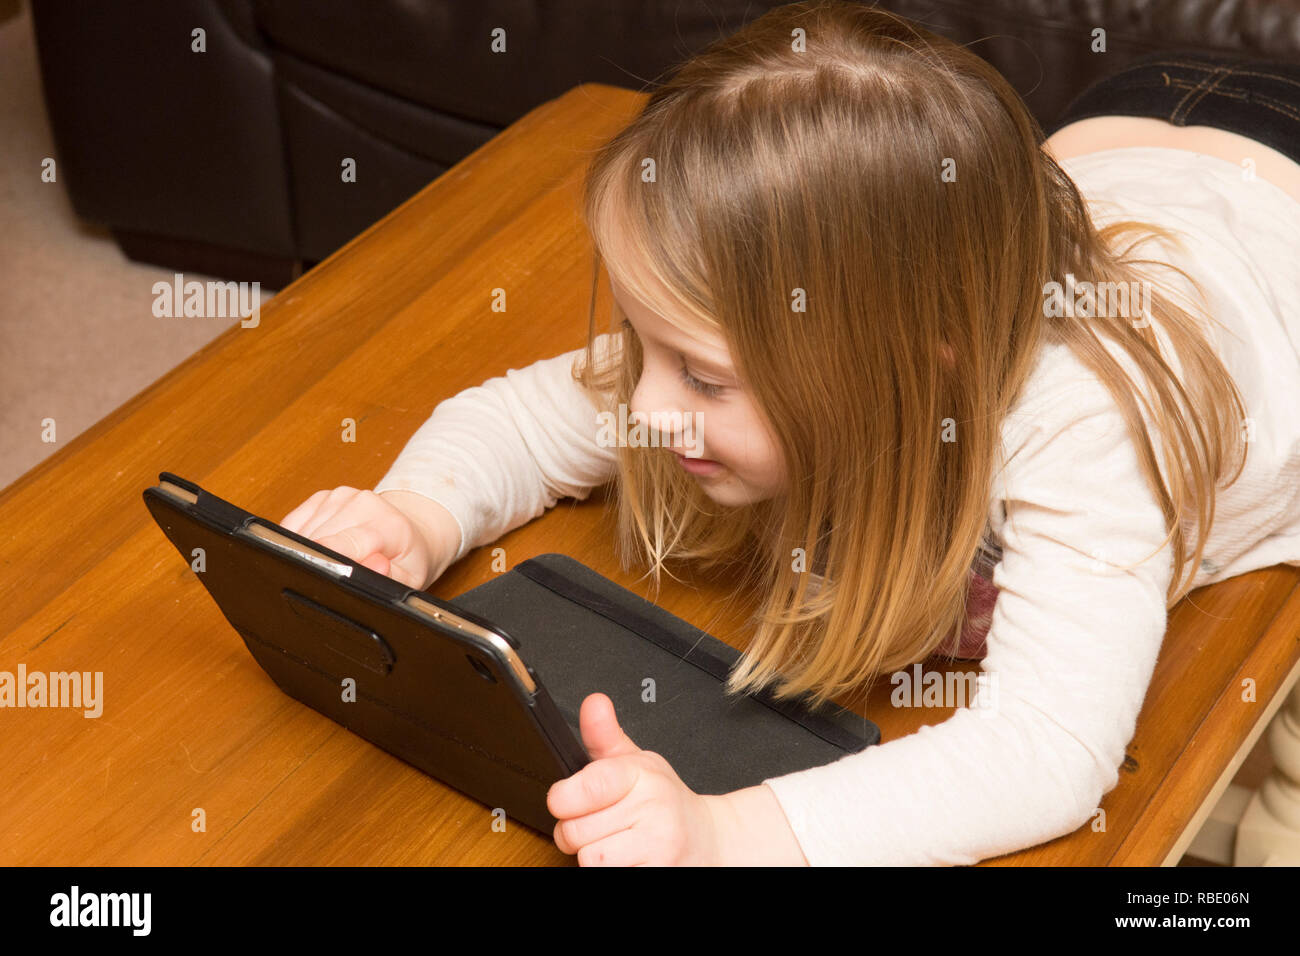 Junge Mädchen spielen mit einer Tablette, digitale Gerät, iPad, Bildschirm, drei Jahre altes Kind Stockfoto